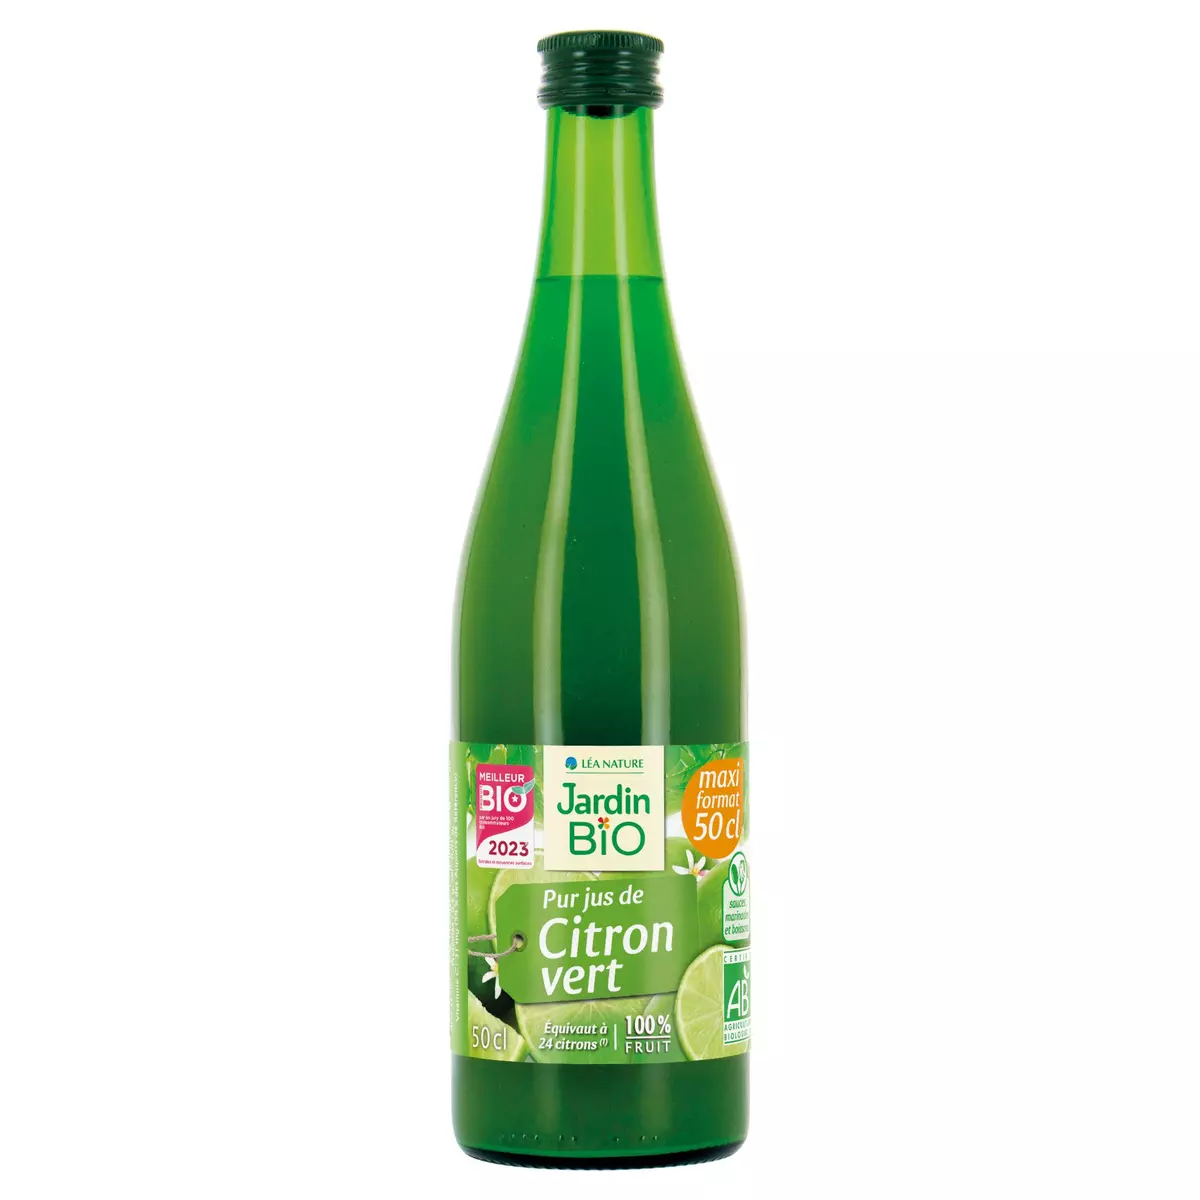 JARDIN BIO ETIC Pur jus de citron vert, en bouteille maxi format 50cl